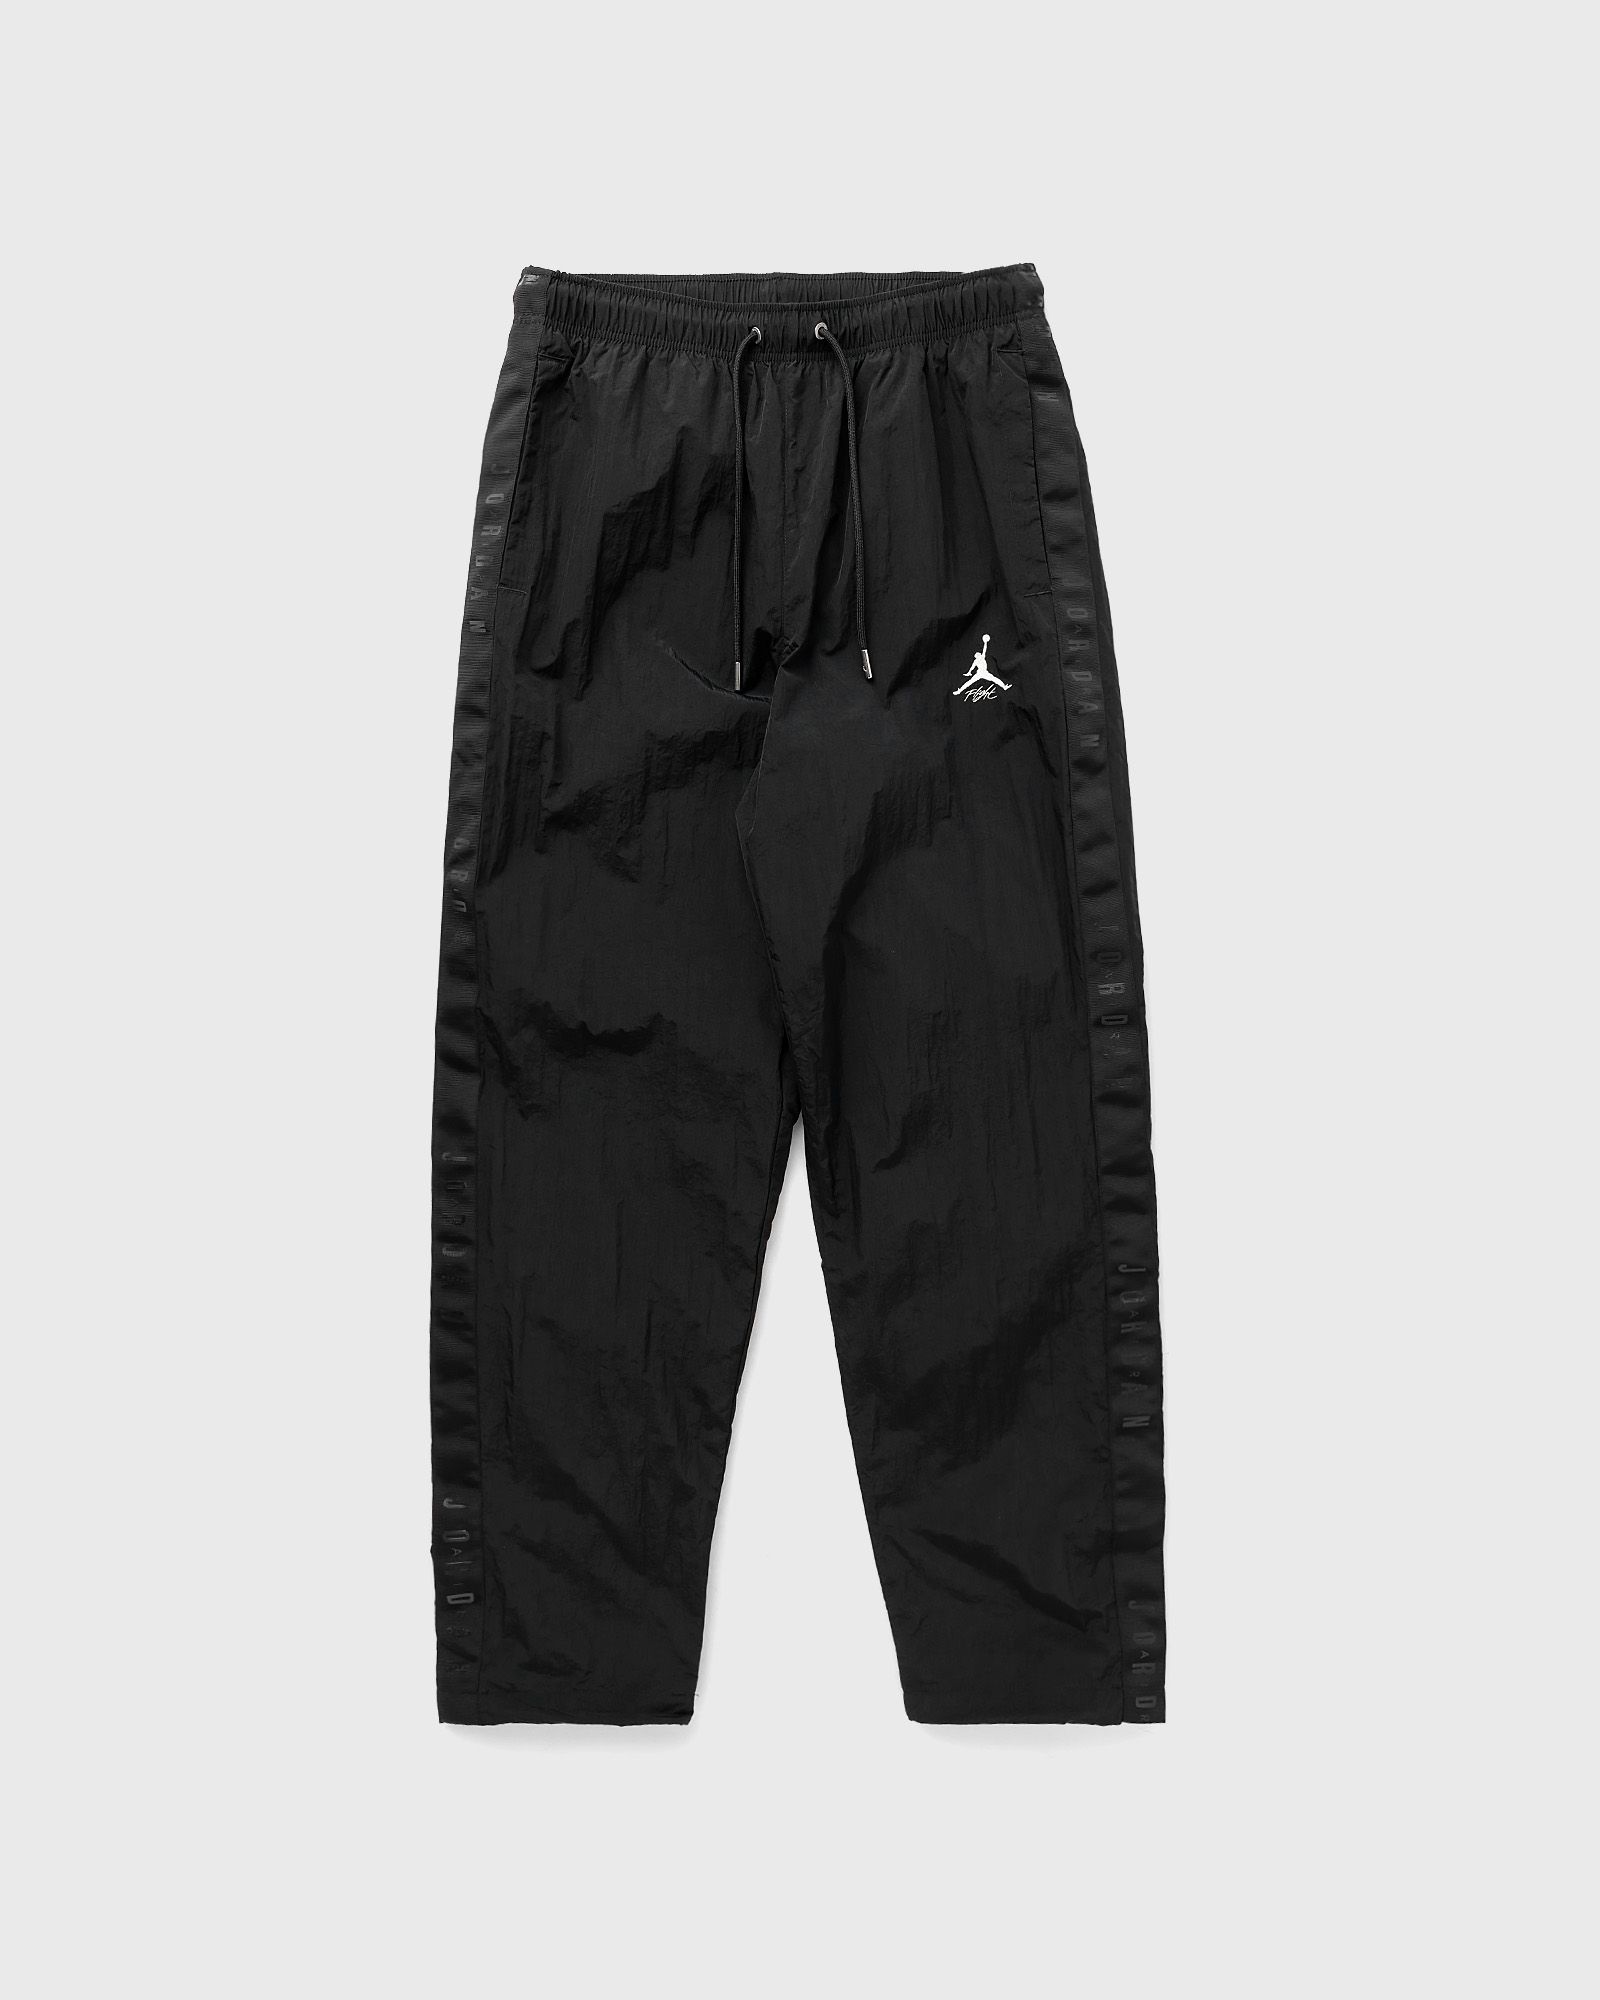 Jordan - essentials warmup pants men track pants black in größe:xl